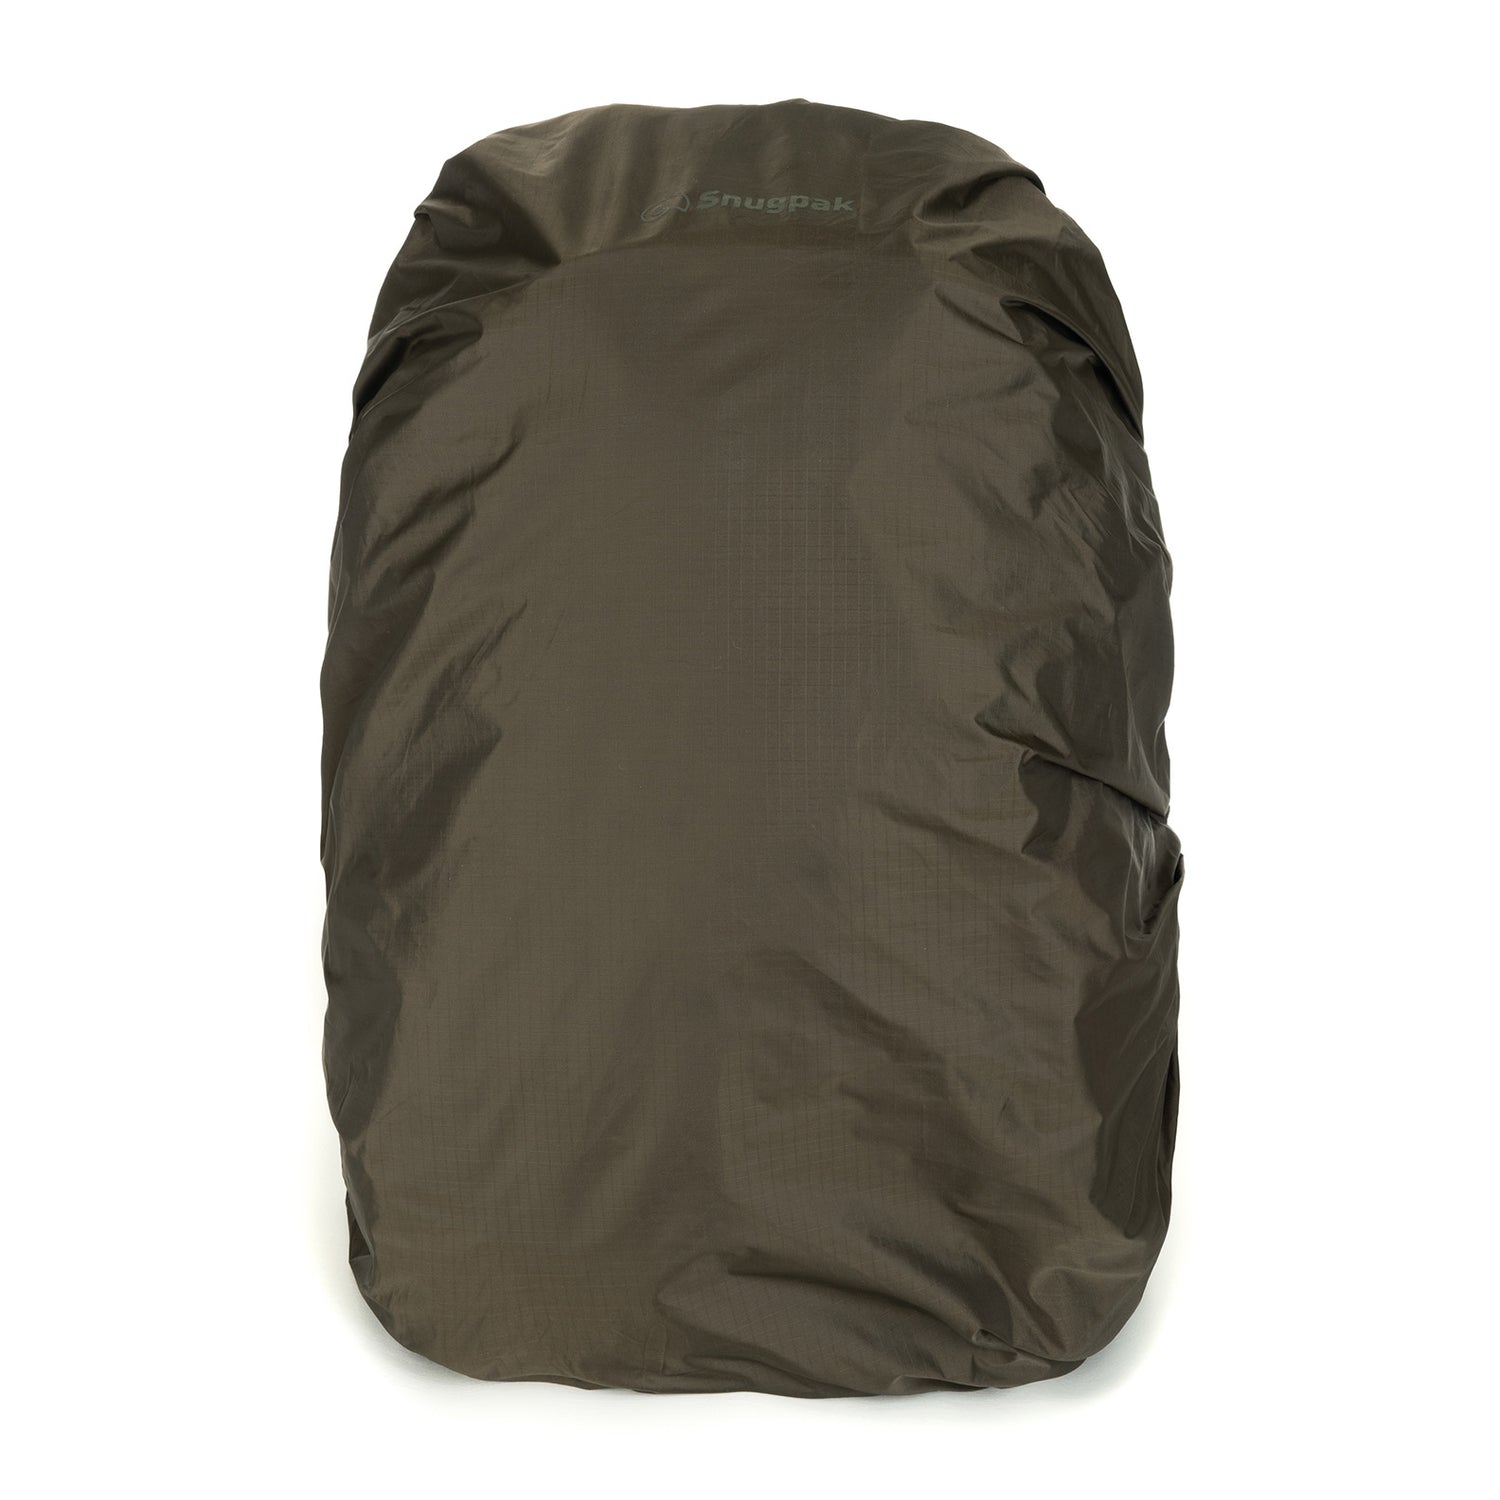 Snugpak Aquacover Waterproof Rucksack Cover